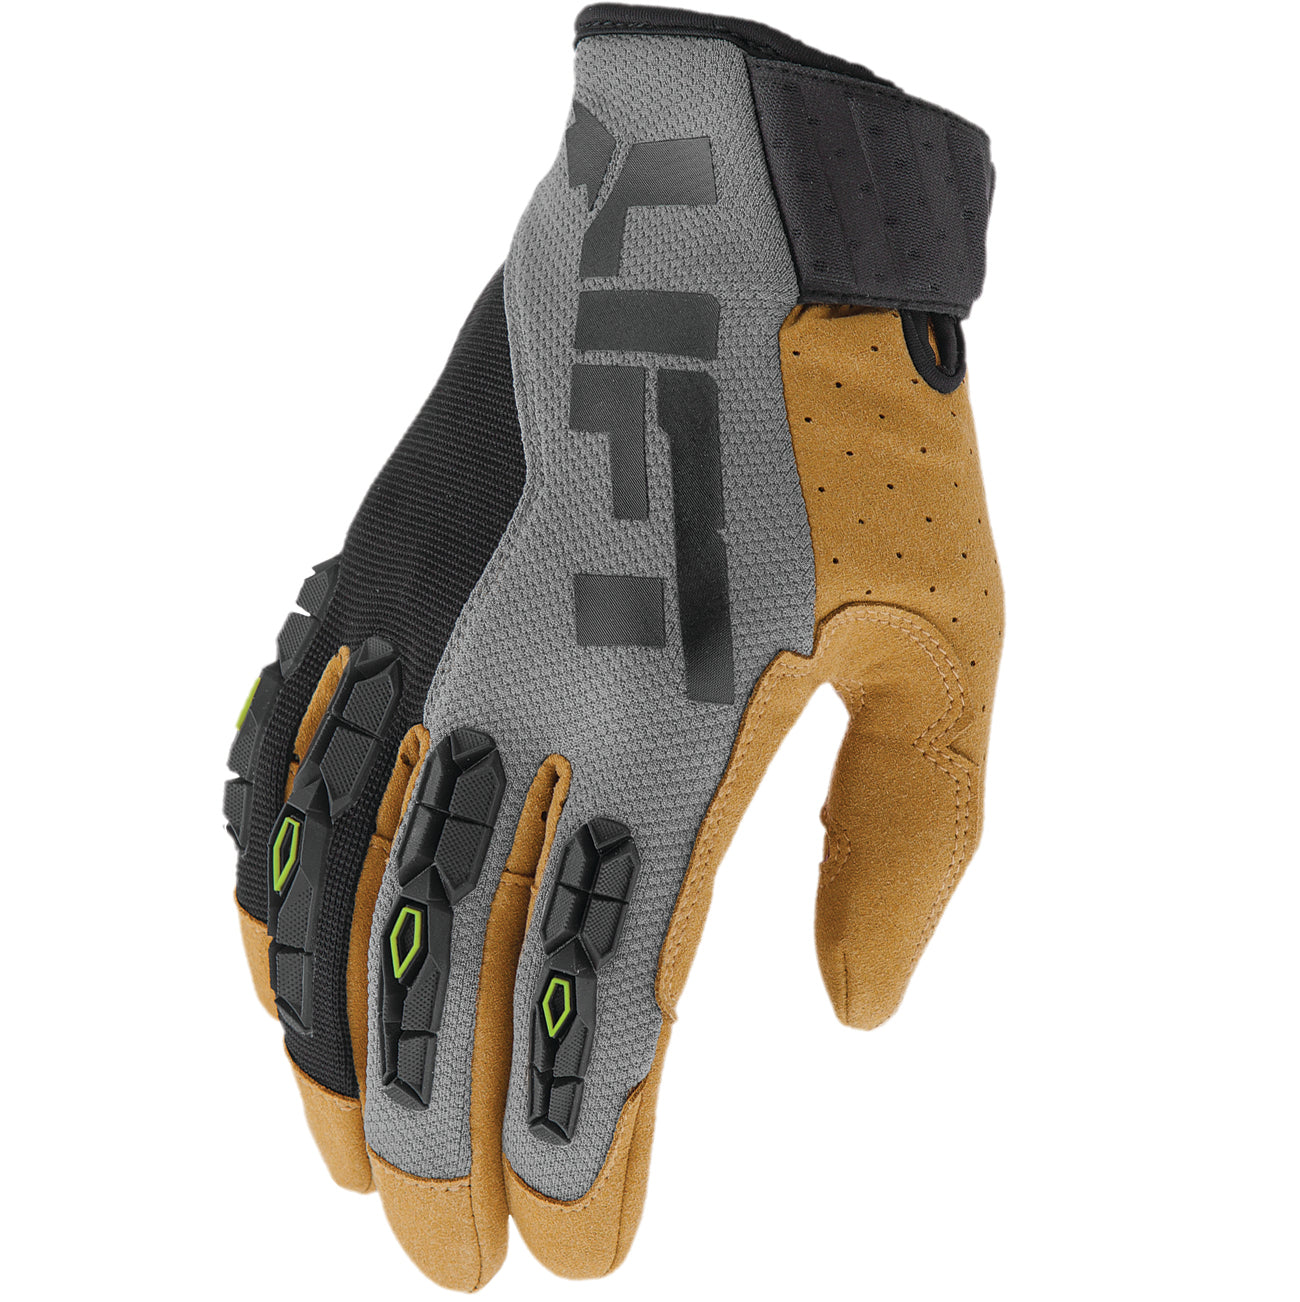 LIFT Safety - HANDLER Glove (Grey/Black)